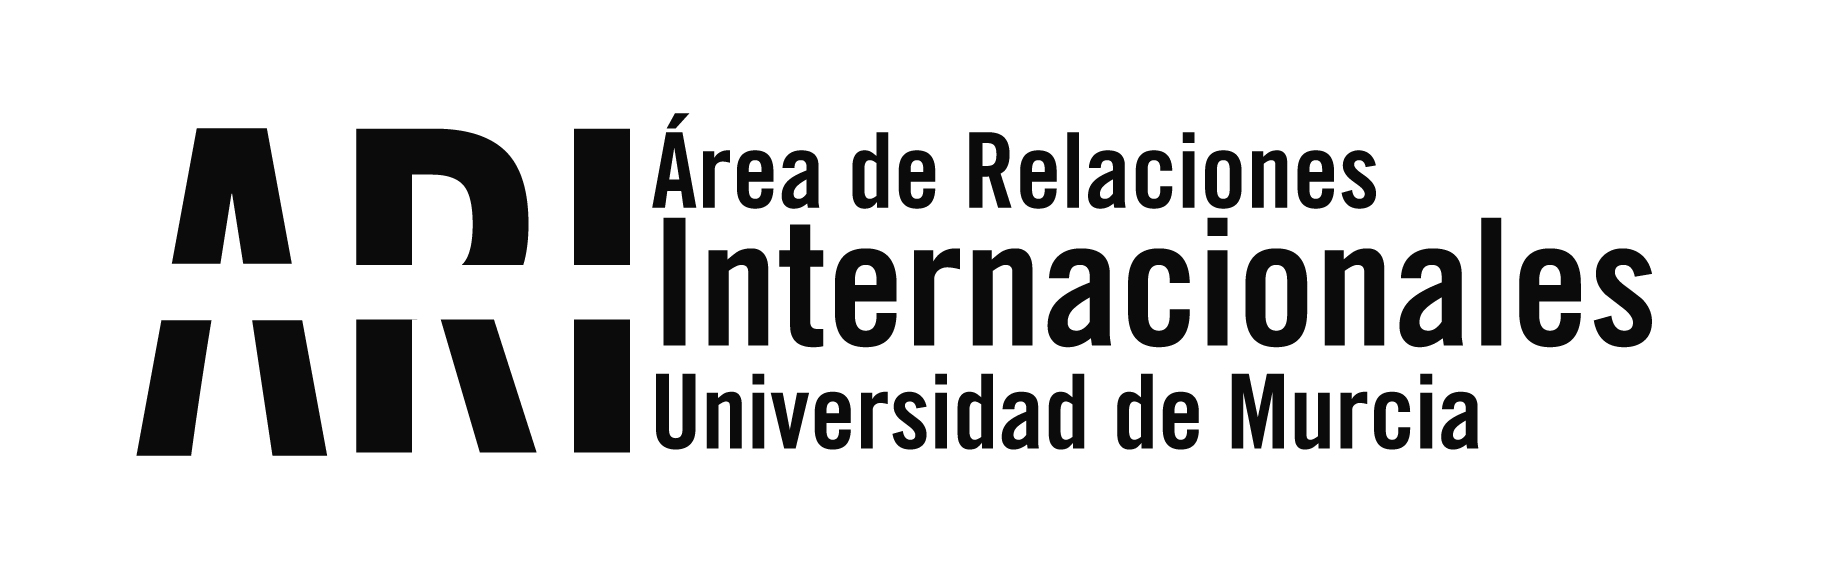 La UMU recibe a representantes de la Universidad de Buenos Aires, la universidad pública más importante de Argentina - Área de Relaciones Internacionales